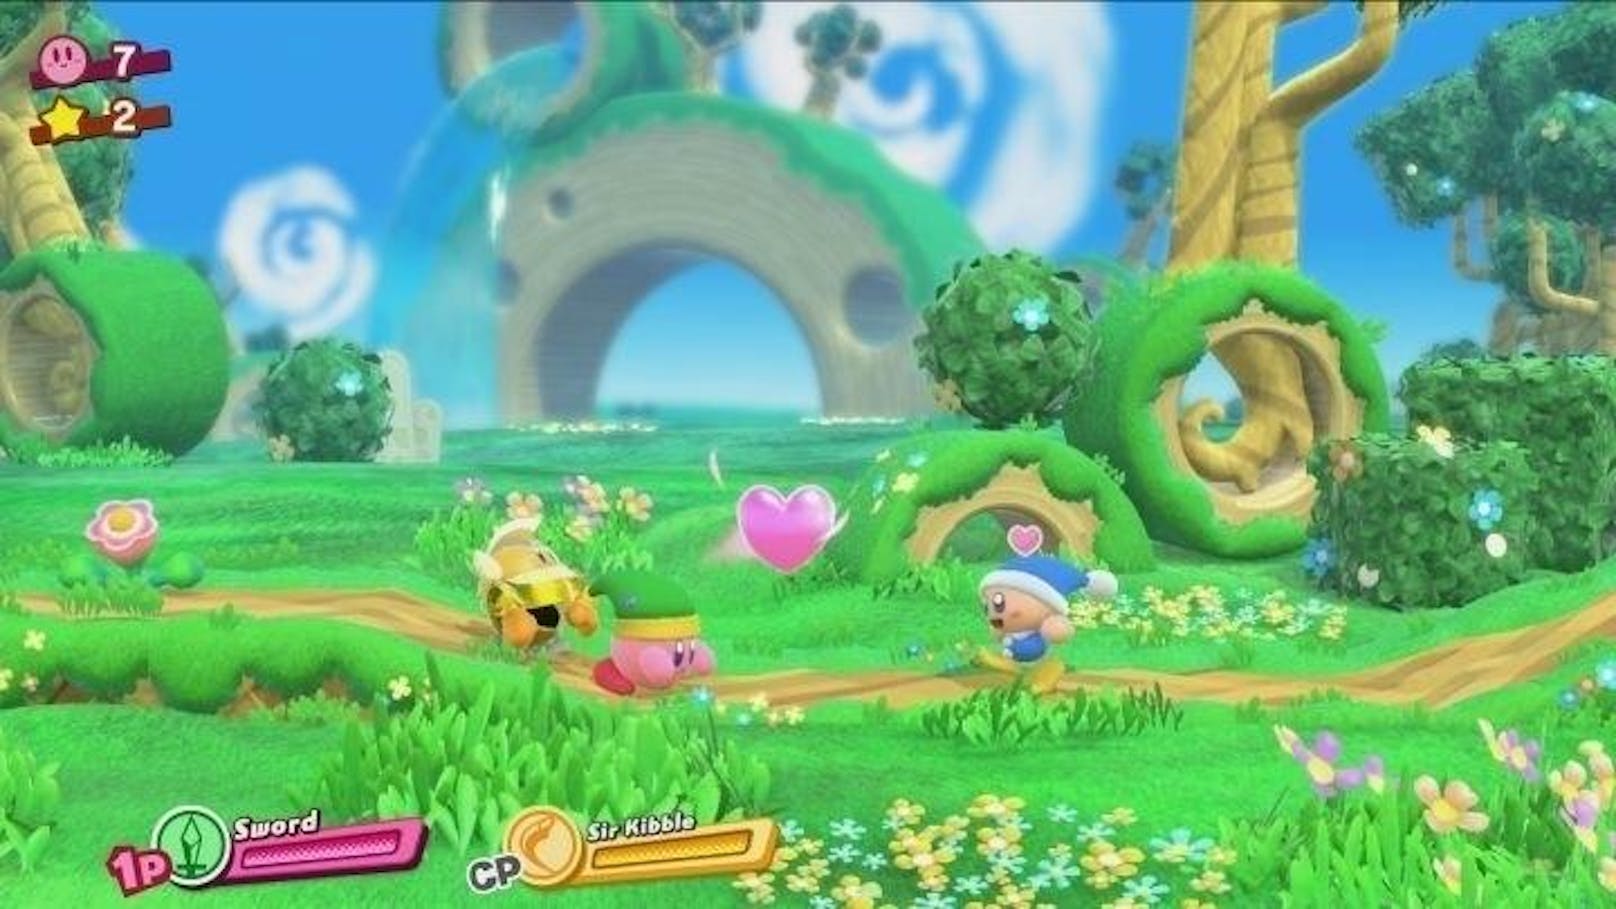 Der süße "Kirby" erhält 2018 ebenso ein Switch-Game...